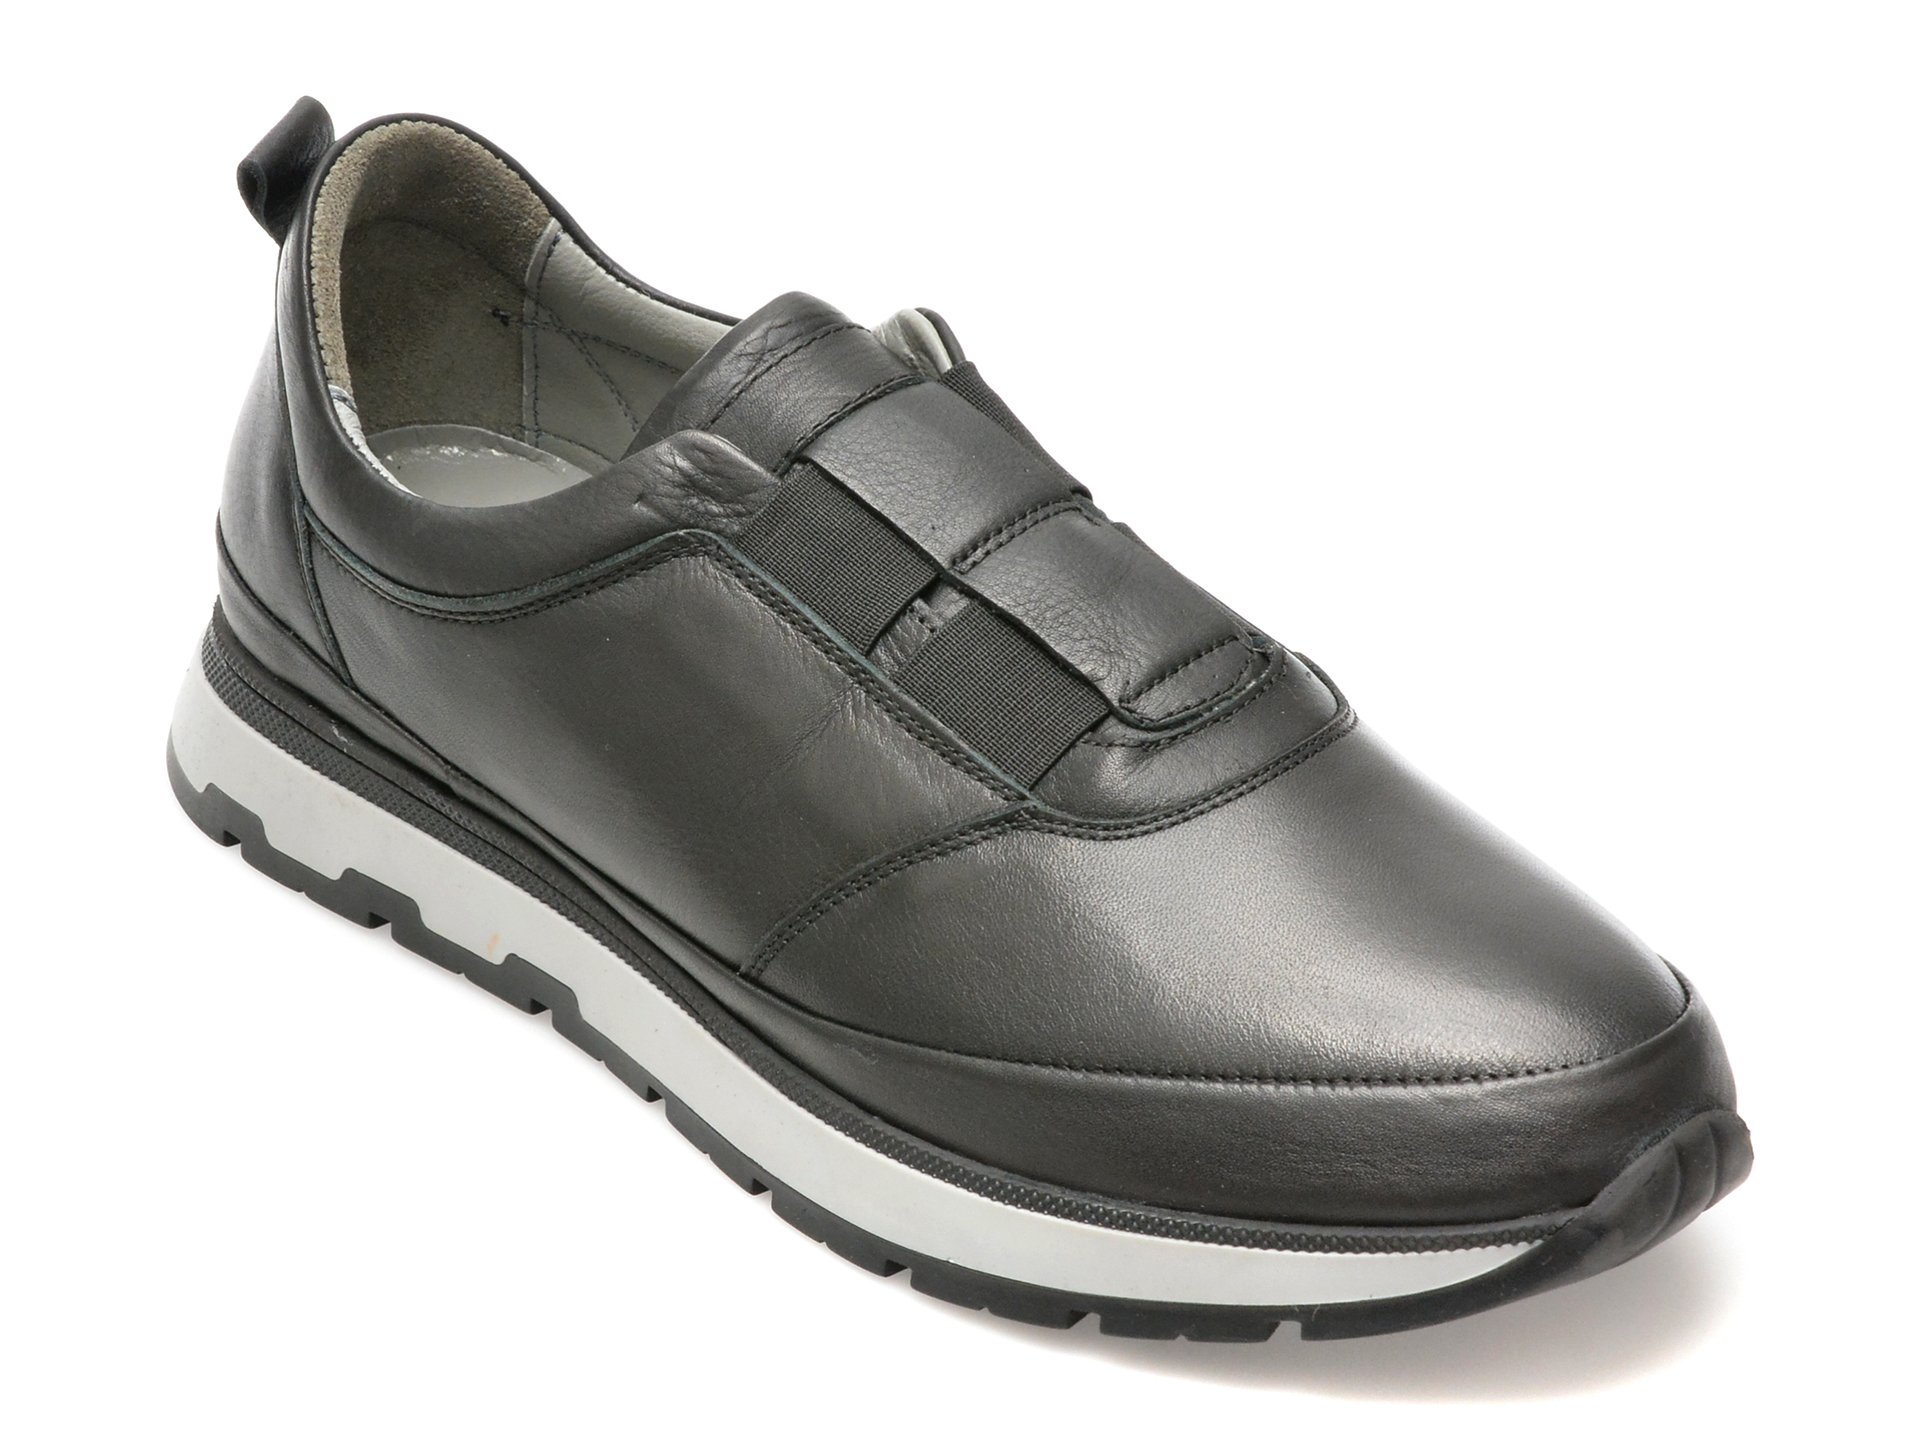 Pantofi AXXELLL negri, SY701, din piele naturala /barbati/pantofi